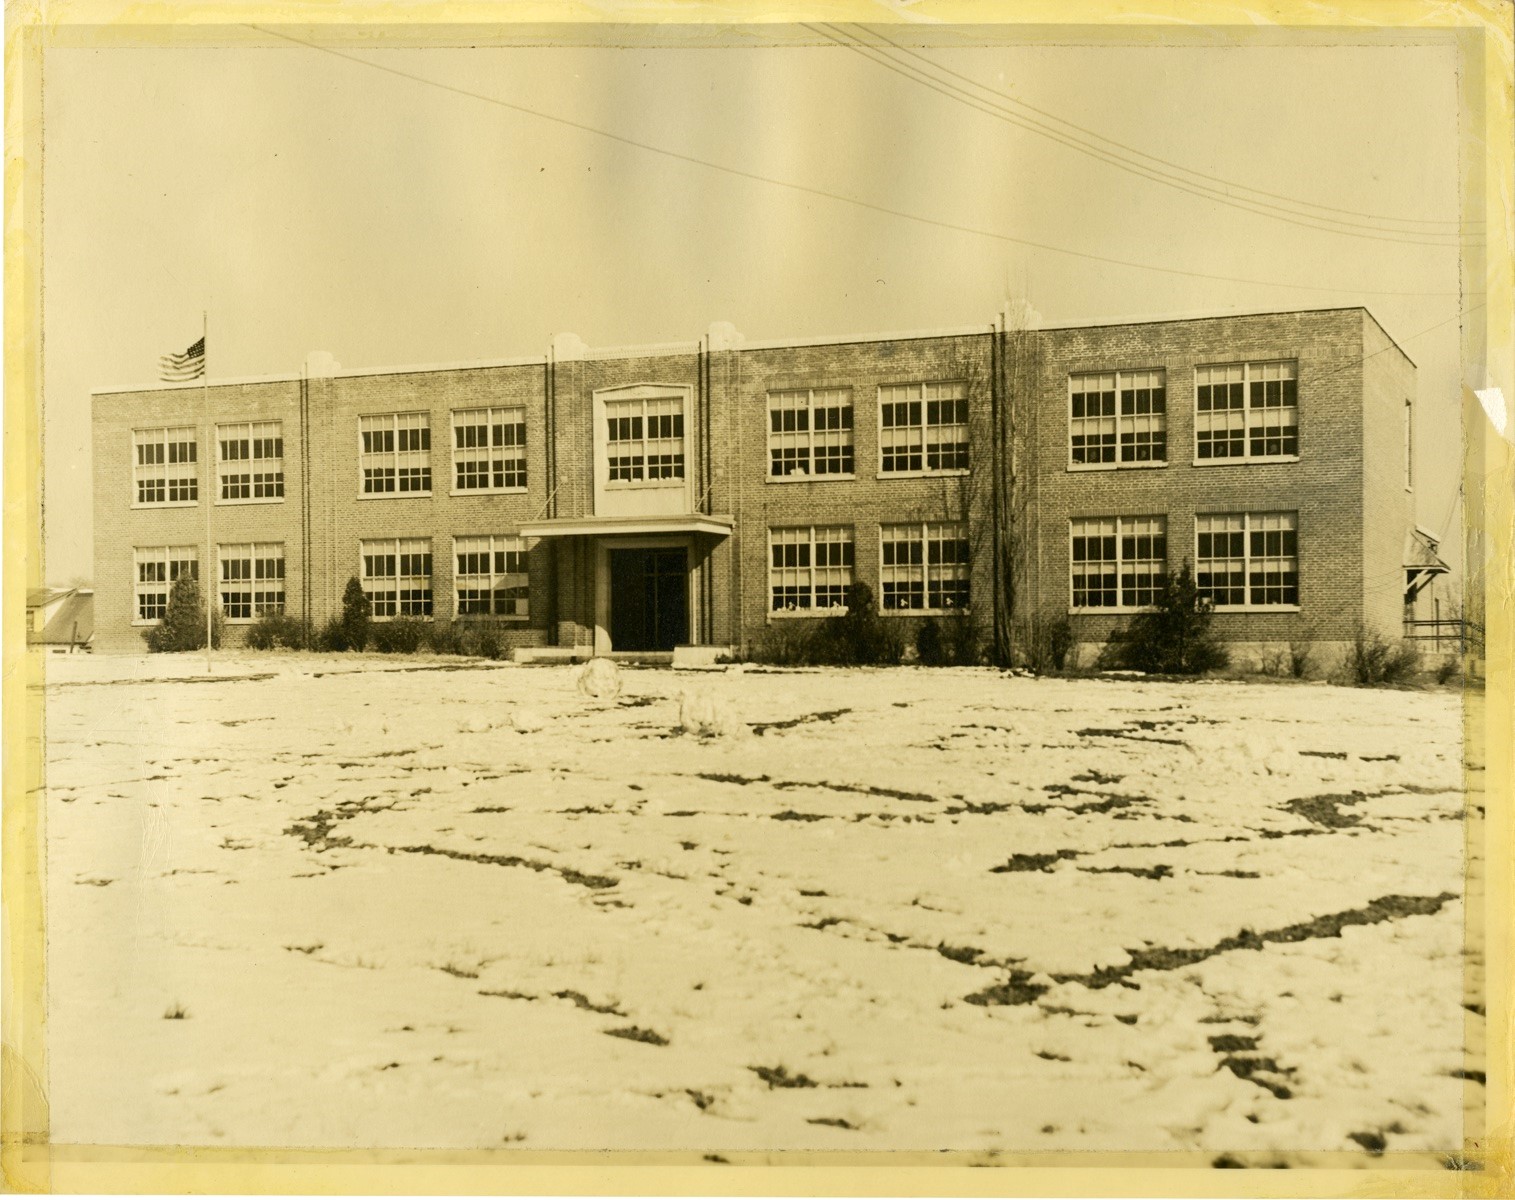 Hoffman Boston Elementary School in 1950